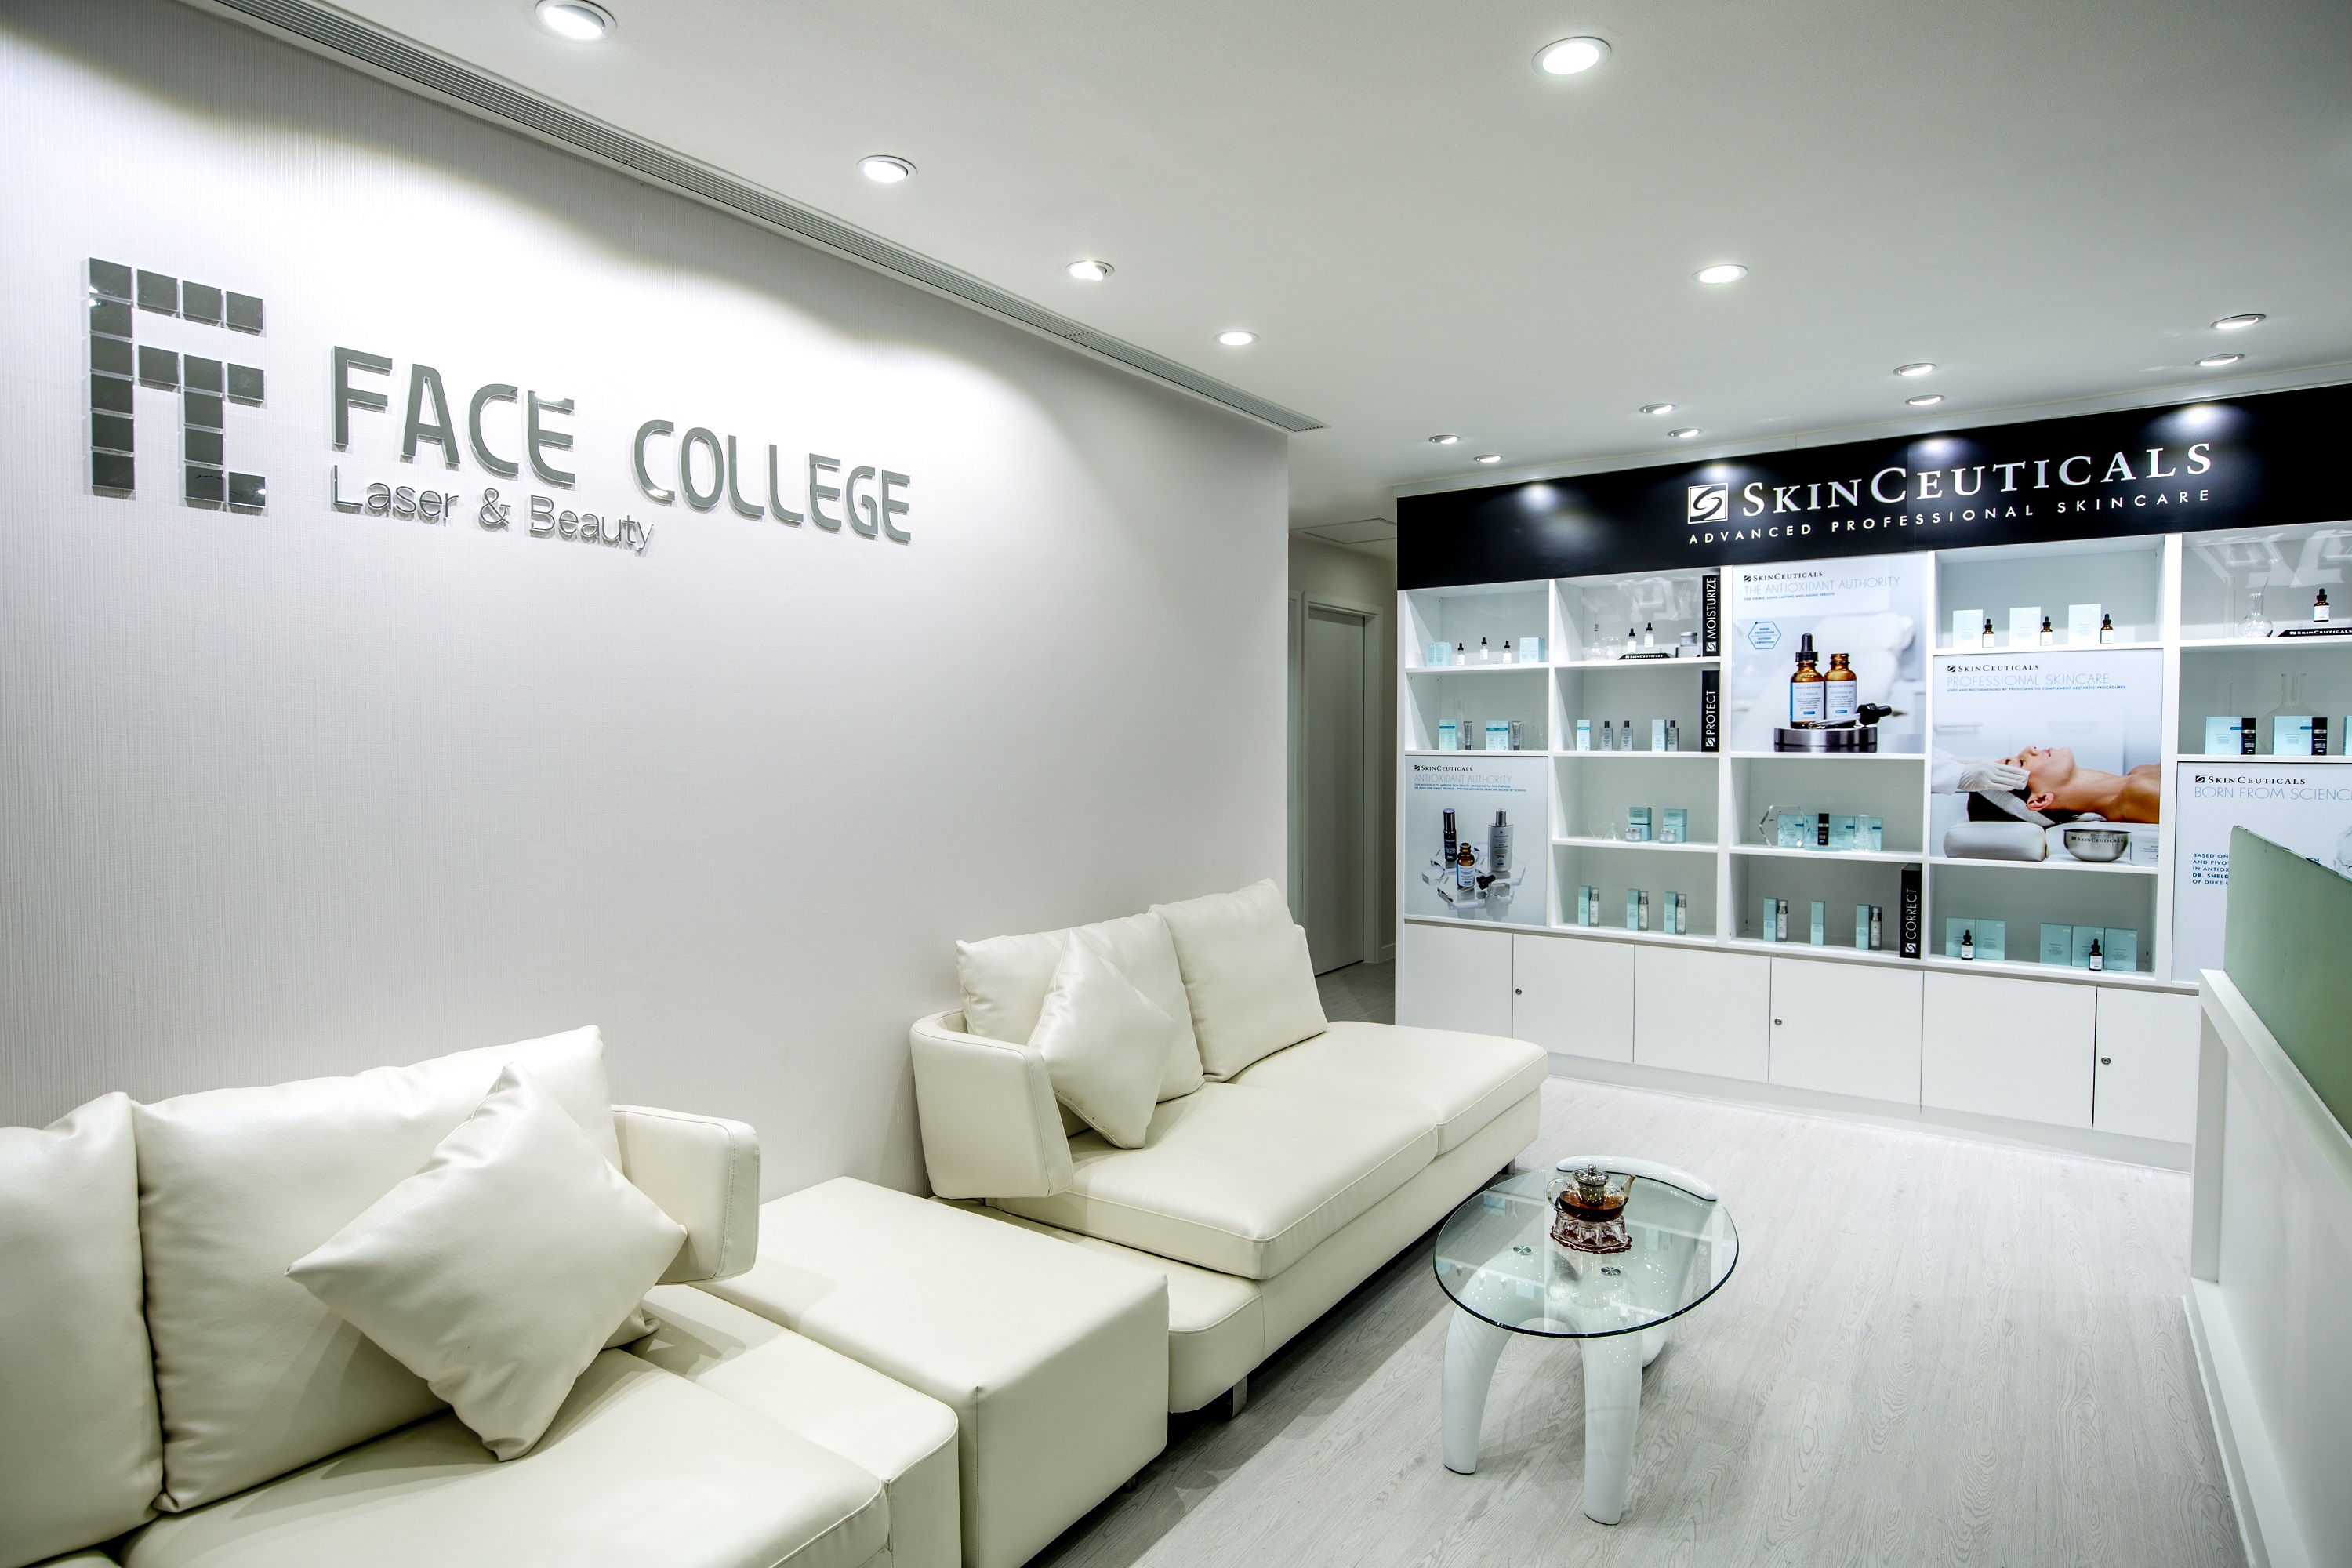 Face College Medical Laser Center